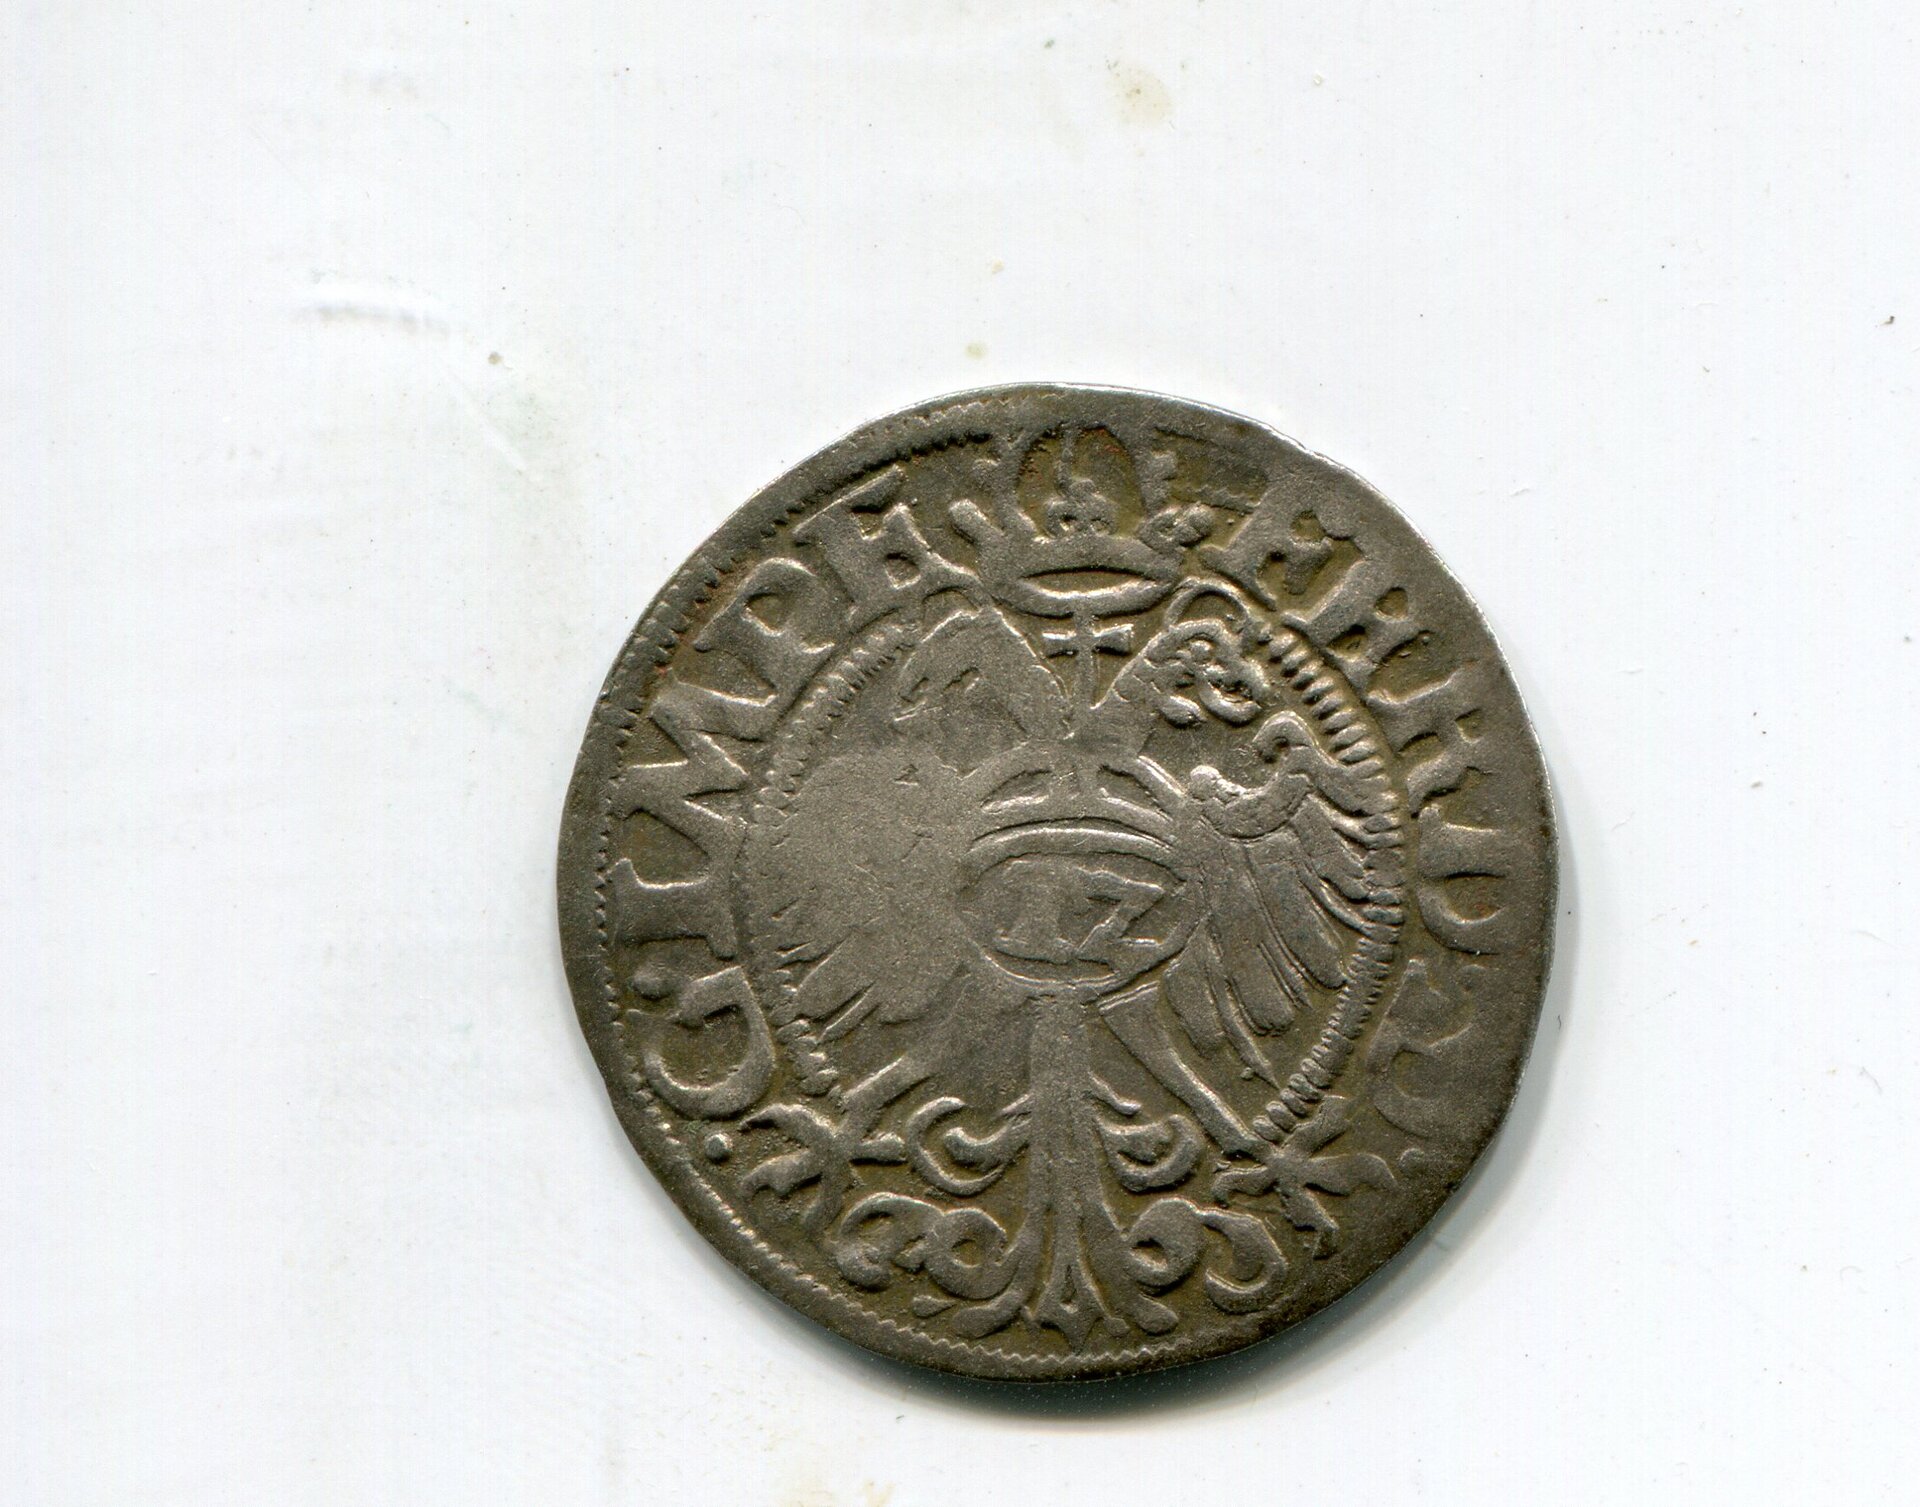 Hameln Ferd I Furstengr or 12 Pf 1562 rev 776.jpg